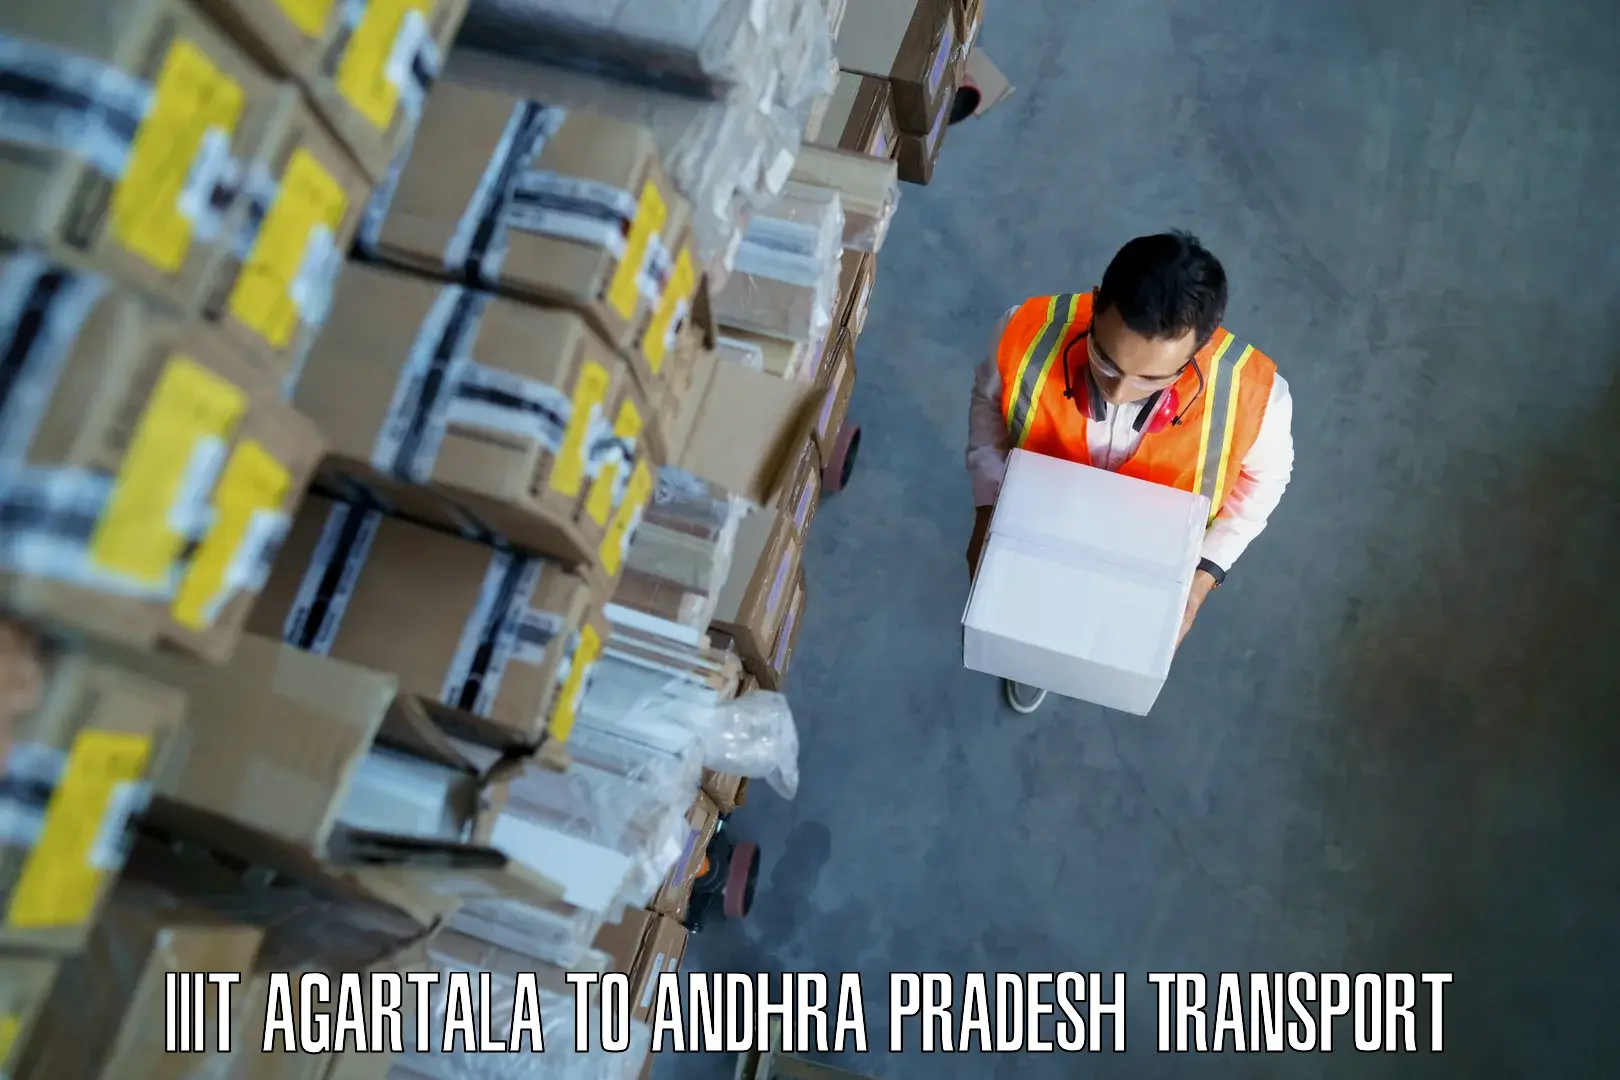 Cargo transportation services IIIT Agartala to Gajapathinagaram